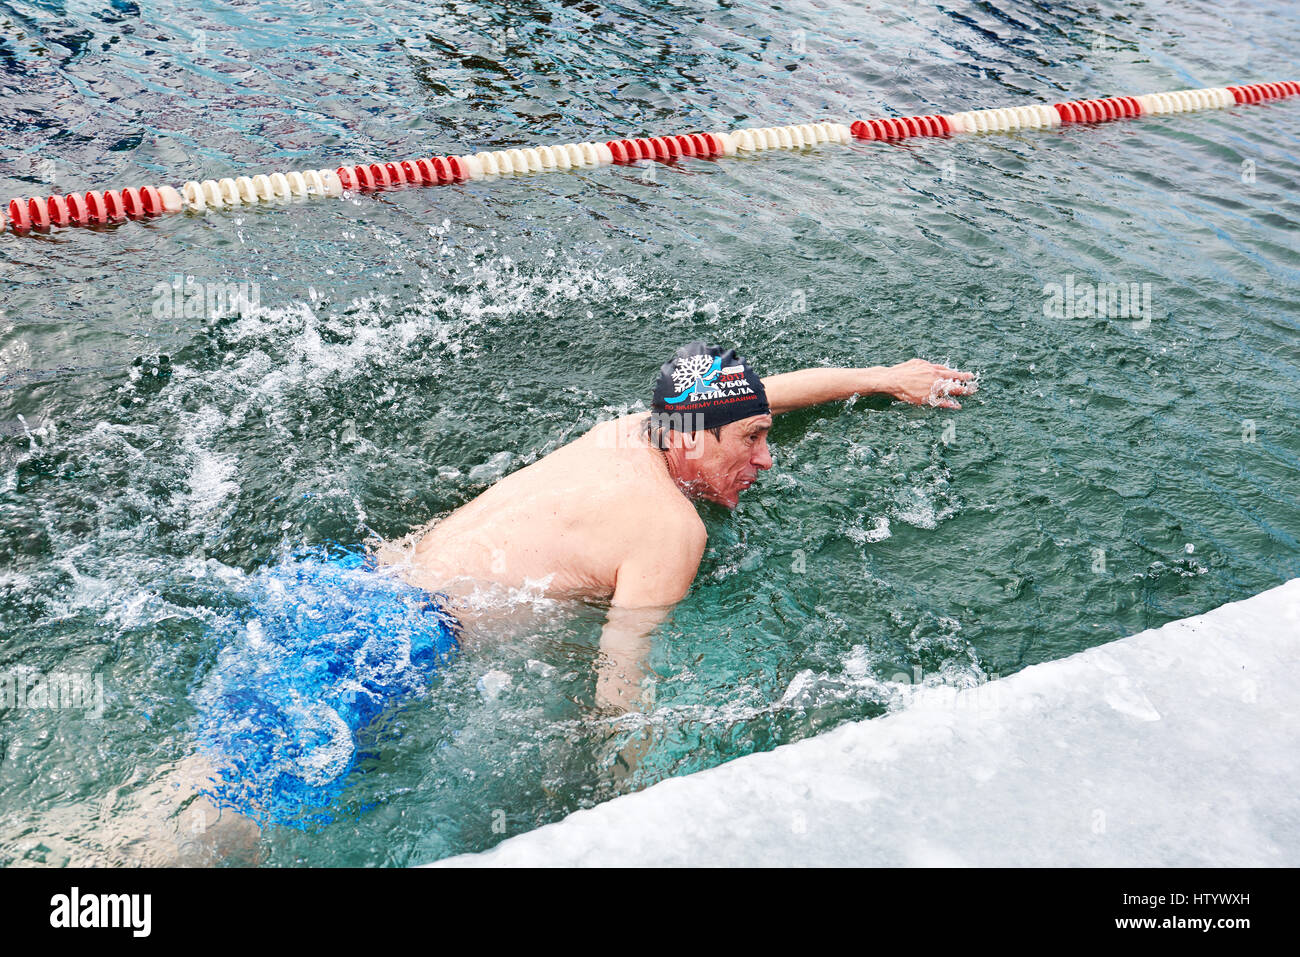 SAHYURTA, région d'Irkoutsk, RUSSIE - Mars 11,2017 : Tasse de Baikal. Les compétitions de natation d'hiver. Un homme nage avec un libre dans l'eau très froide Banque D'Images